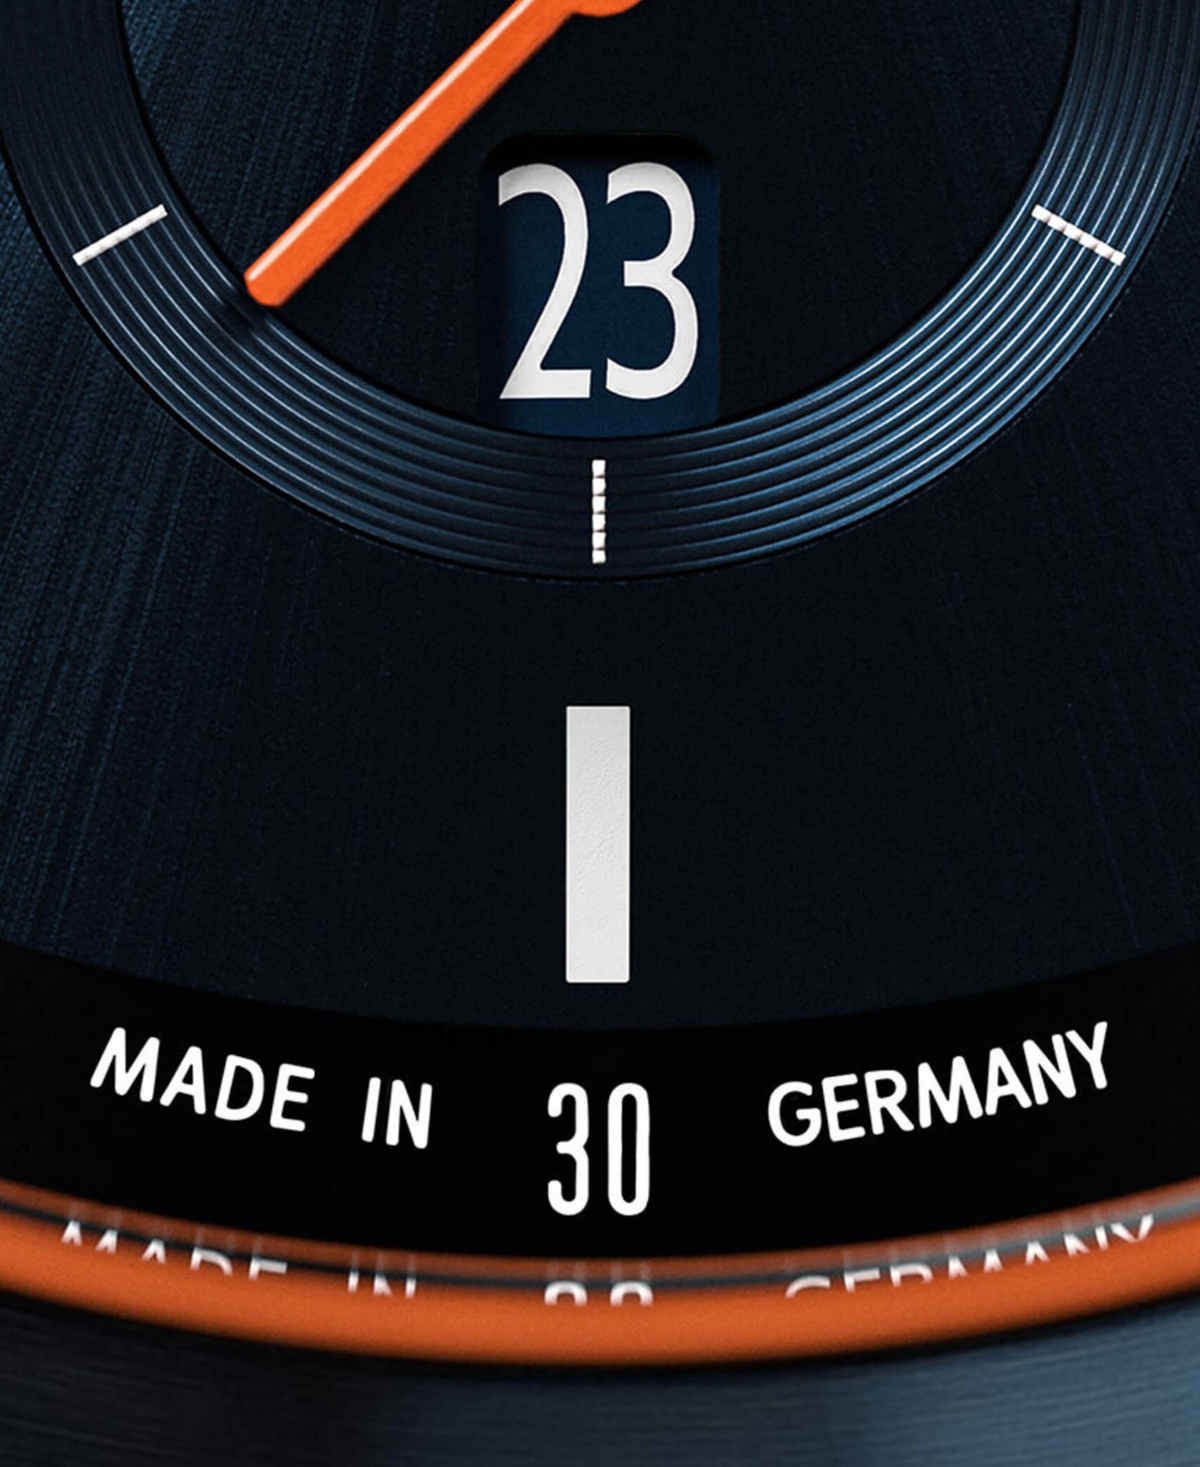 Shop Lilienthal Berlin Men's Blue Orange Blue Stainless Steel Mesh Watch 42mm